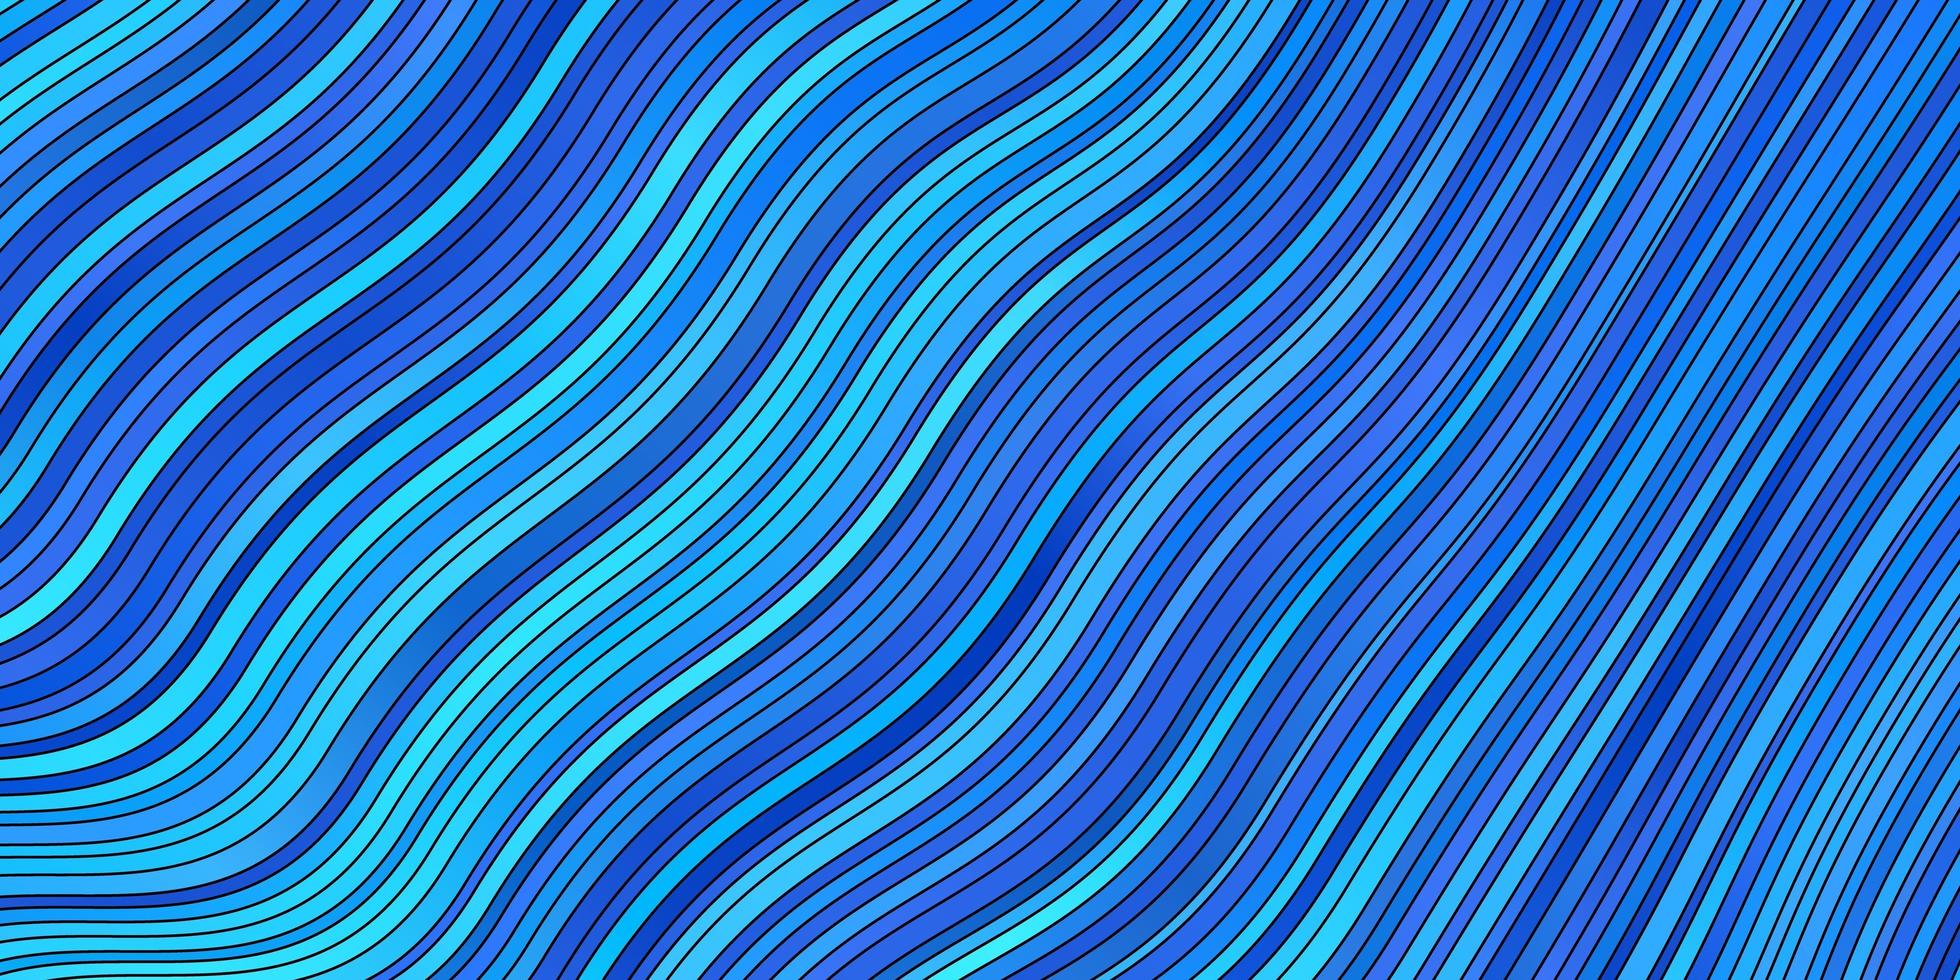 sfondo vettoriale azzurro con fiocchi. illustrazione colorata con linee curve. modello per annunci, spot pubblicitari.